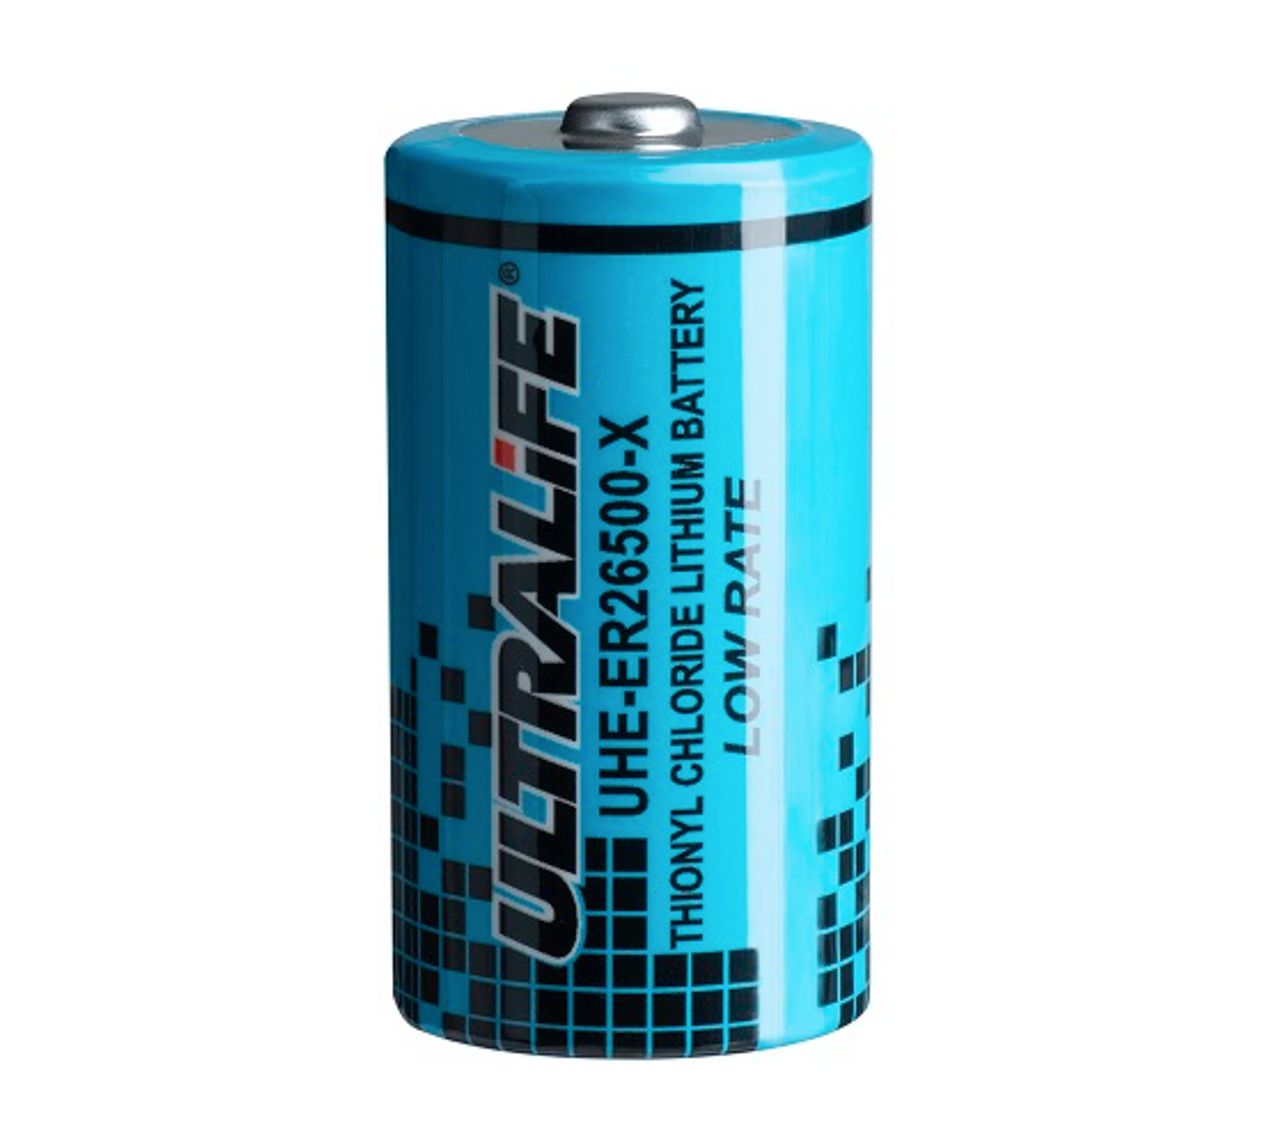 Ultralife UHE-ER26500 Battery - 3.6 Volt C Cell Lithium